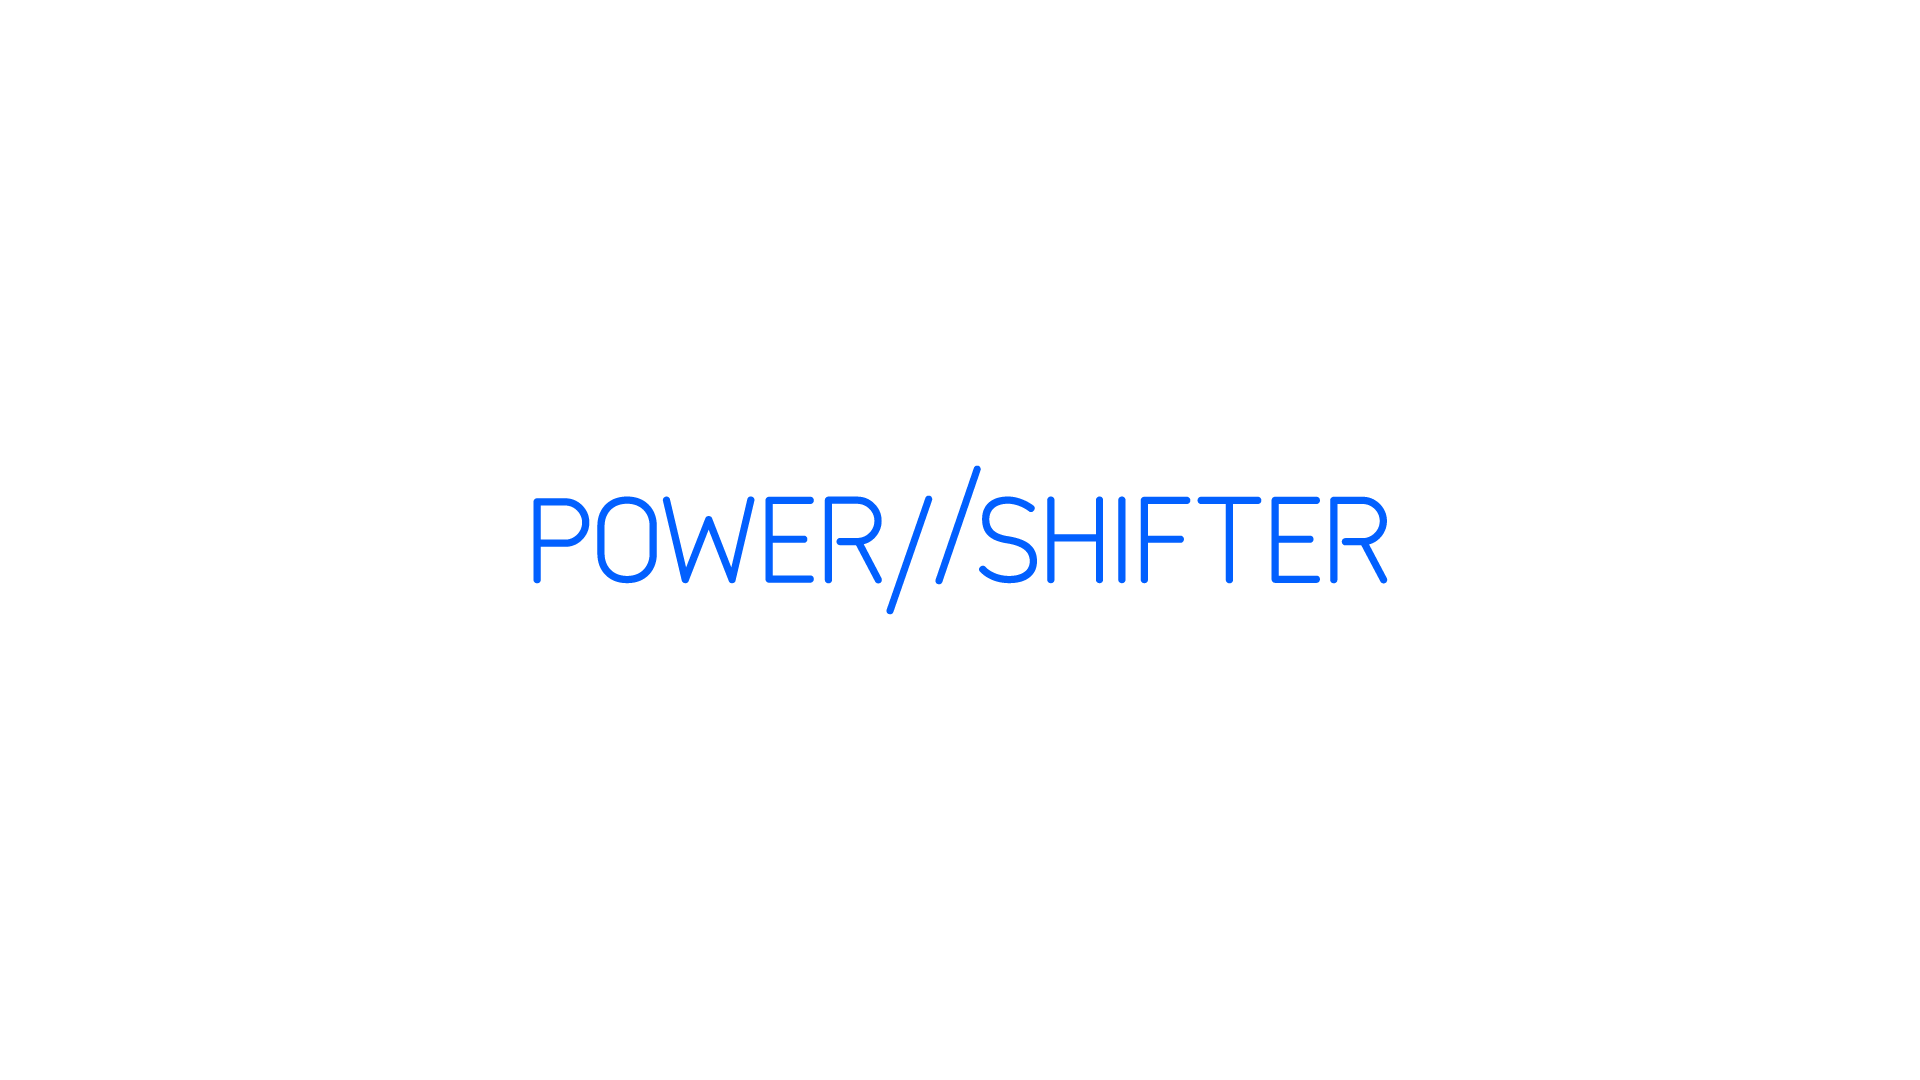 POWER SHIFTER Digital logo